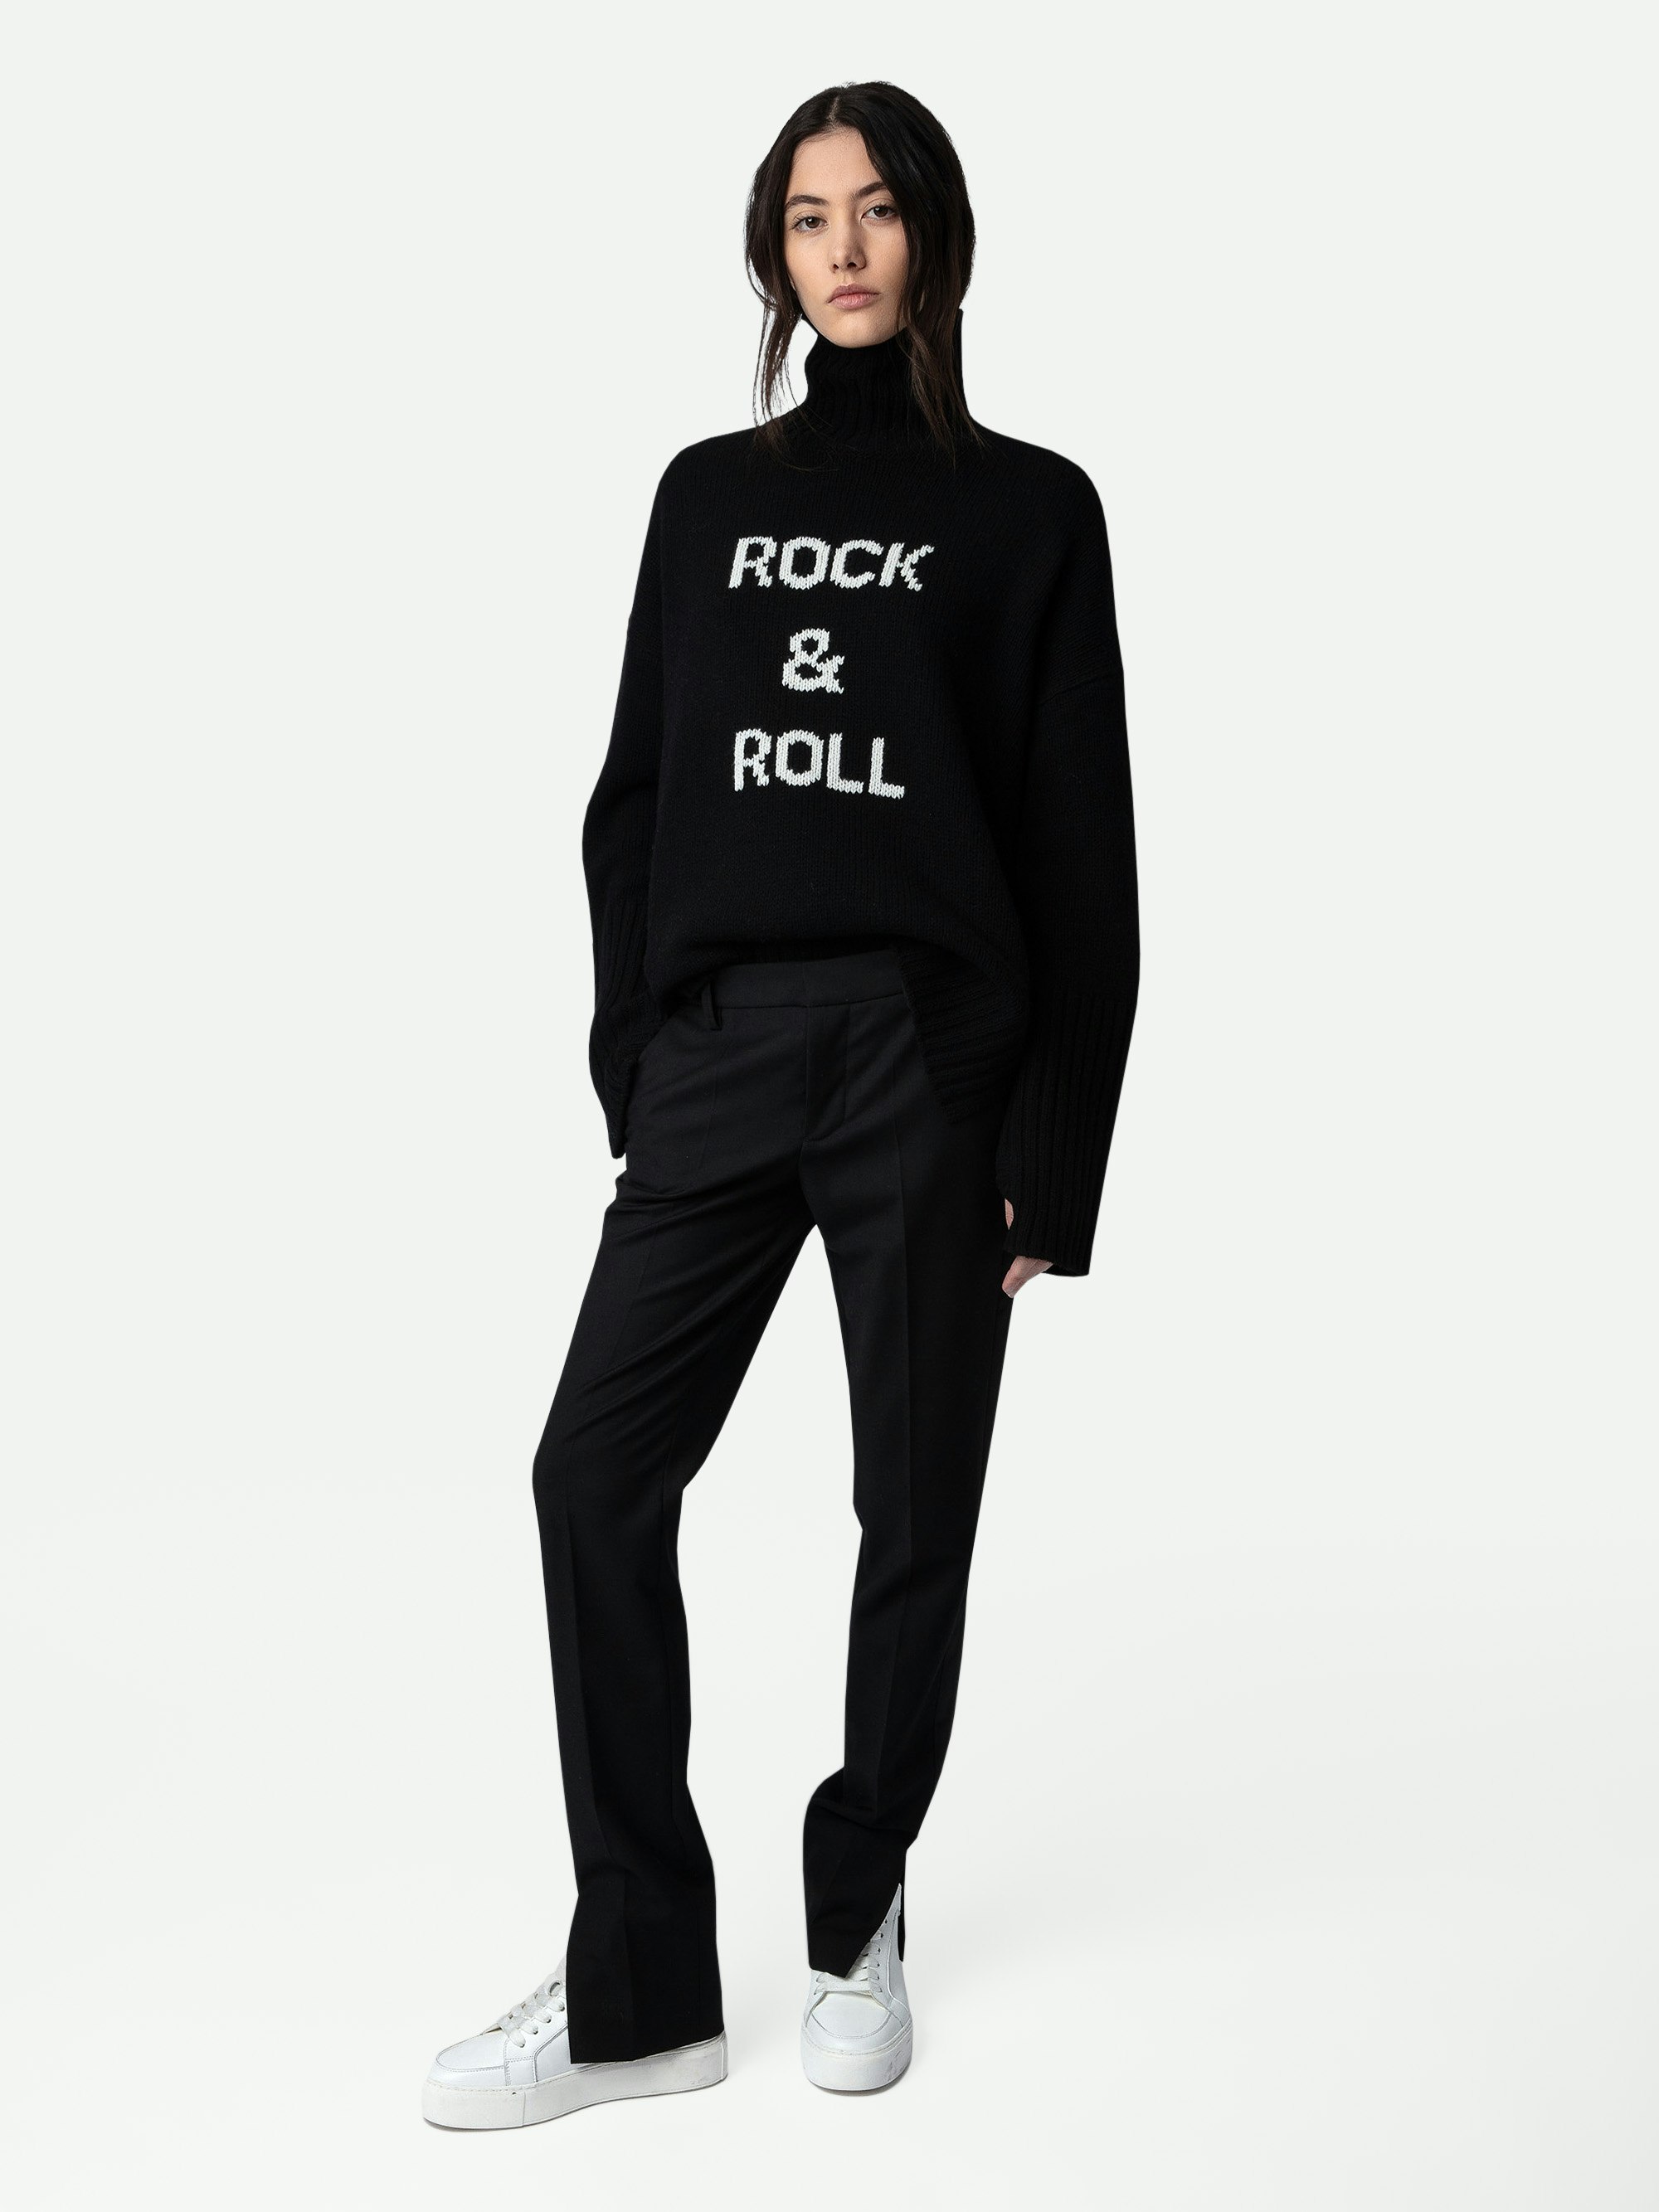 Maglione Alma Rock & Roll 100% Lana - Maglione a collo alto da donna nero con scritta